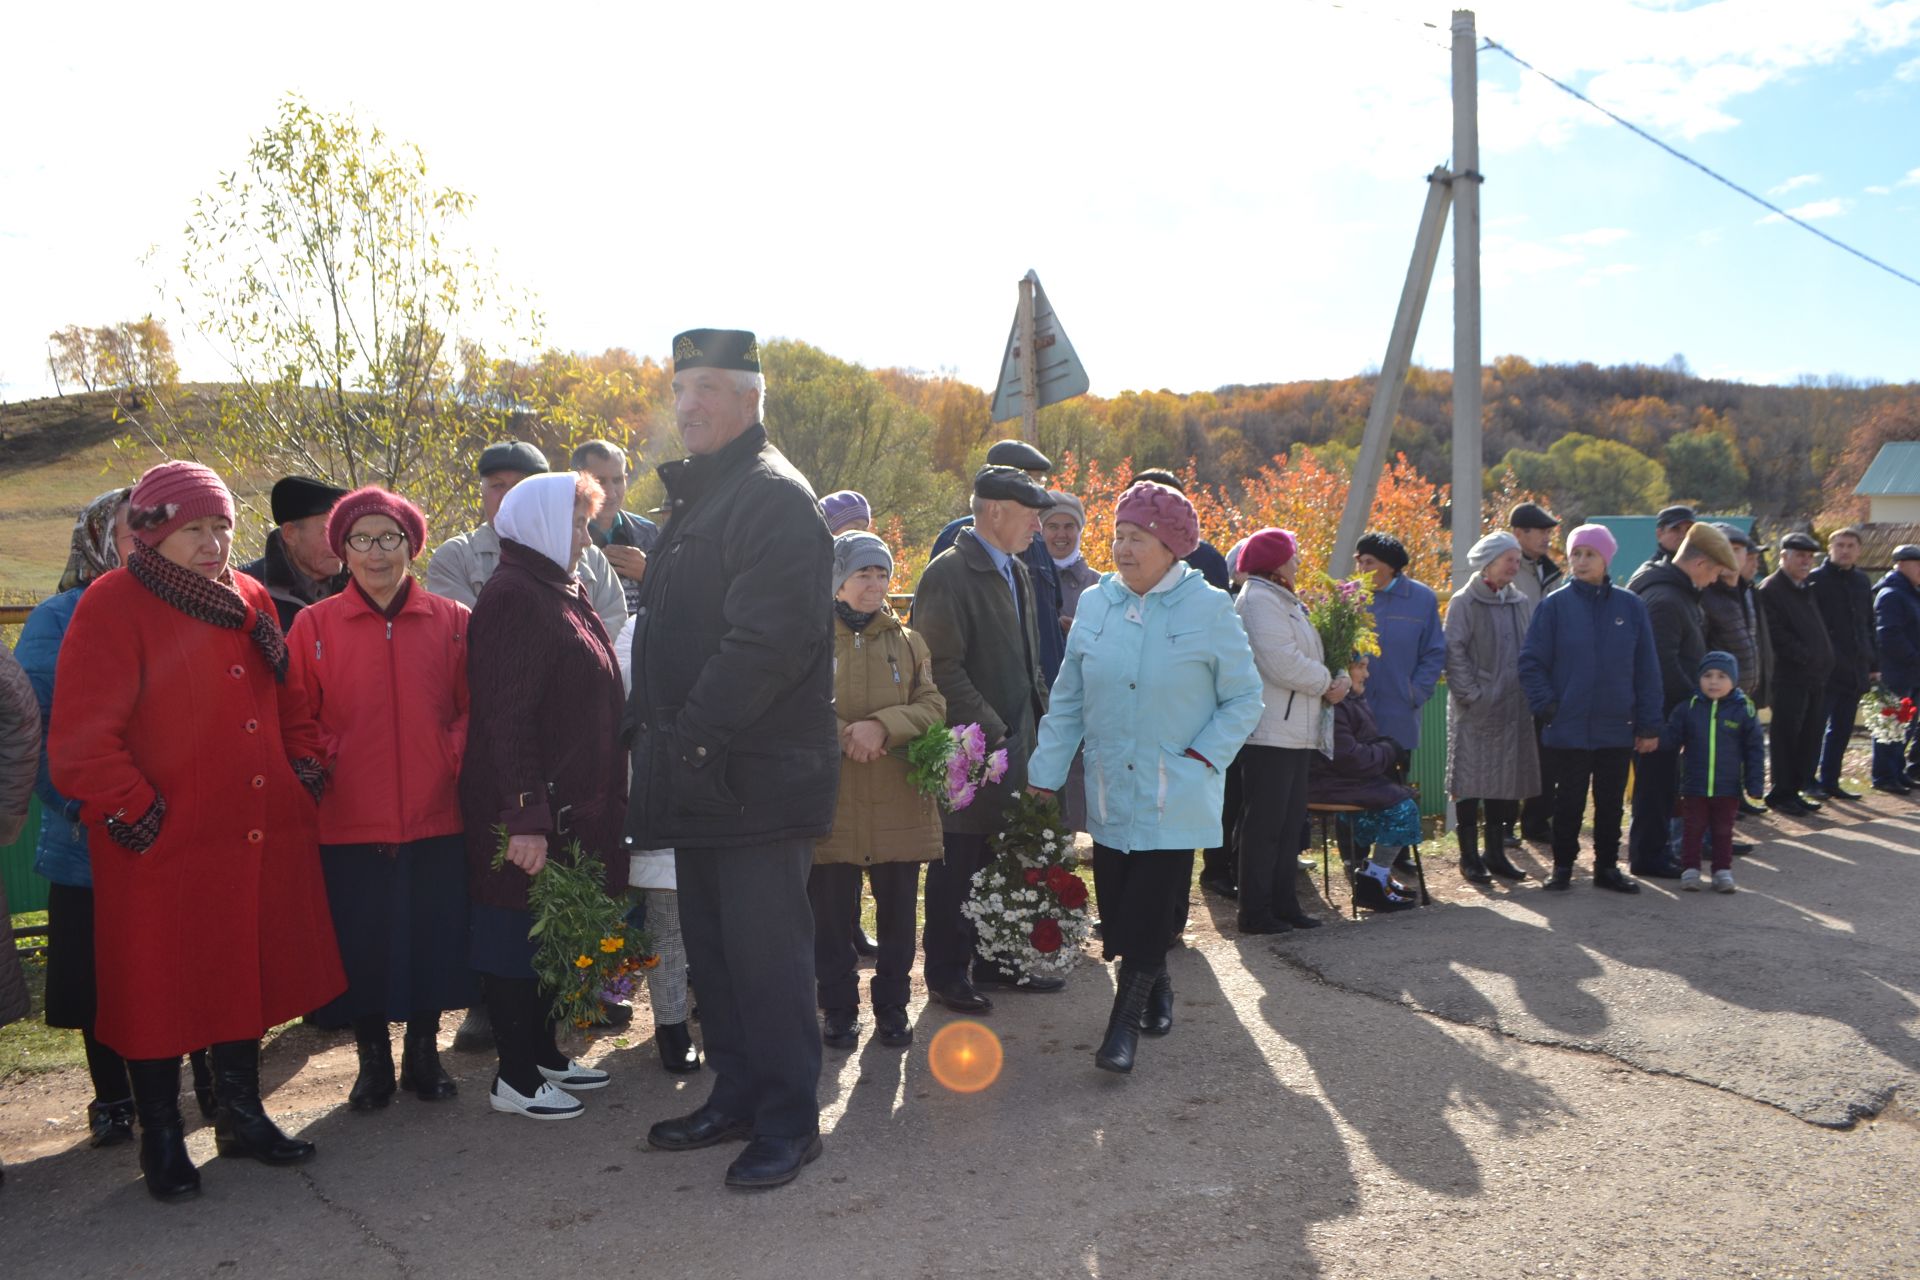 &nbsp;В деревне Октябрь-Буляк установлена мемориальная доска в честь нашего земляка-героя Альберта Шайхутдинова